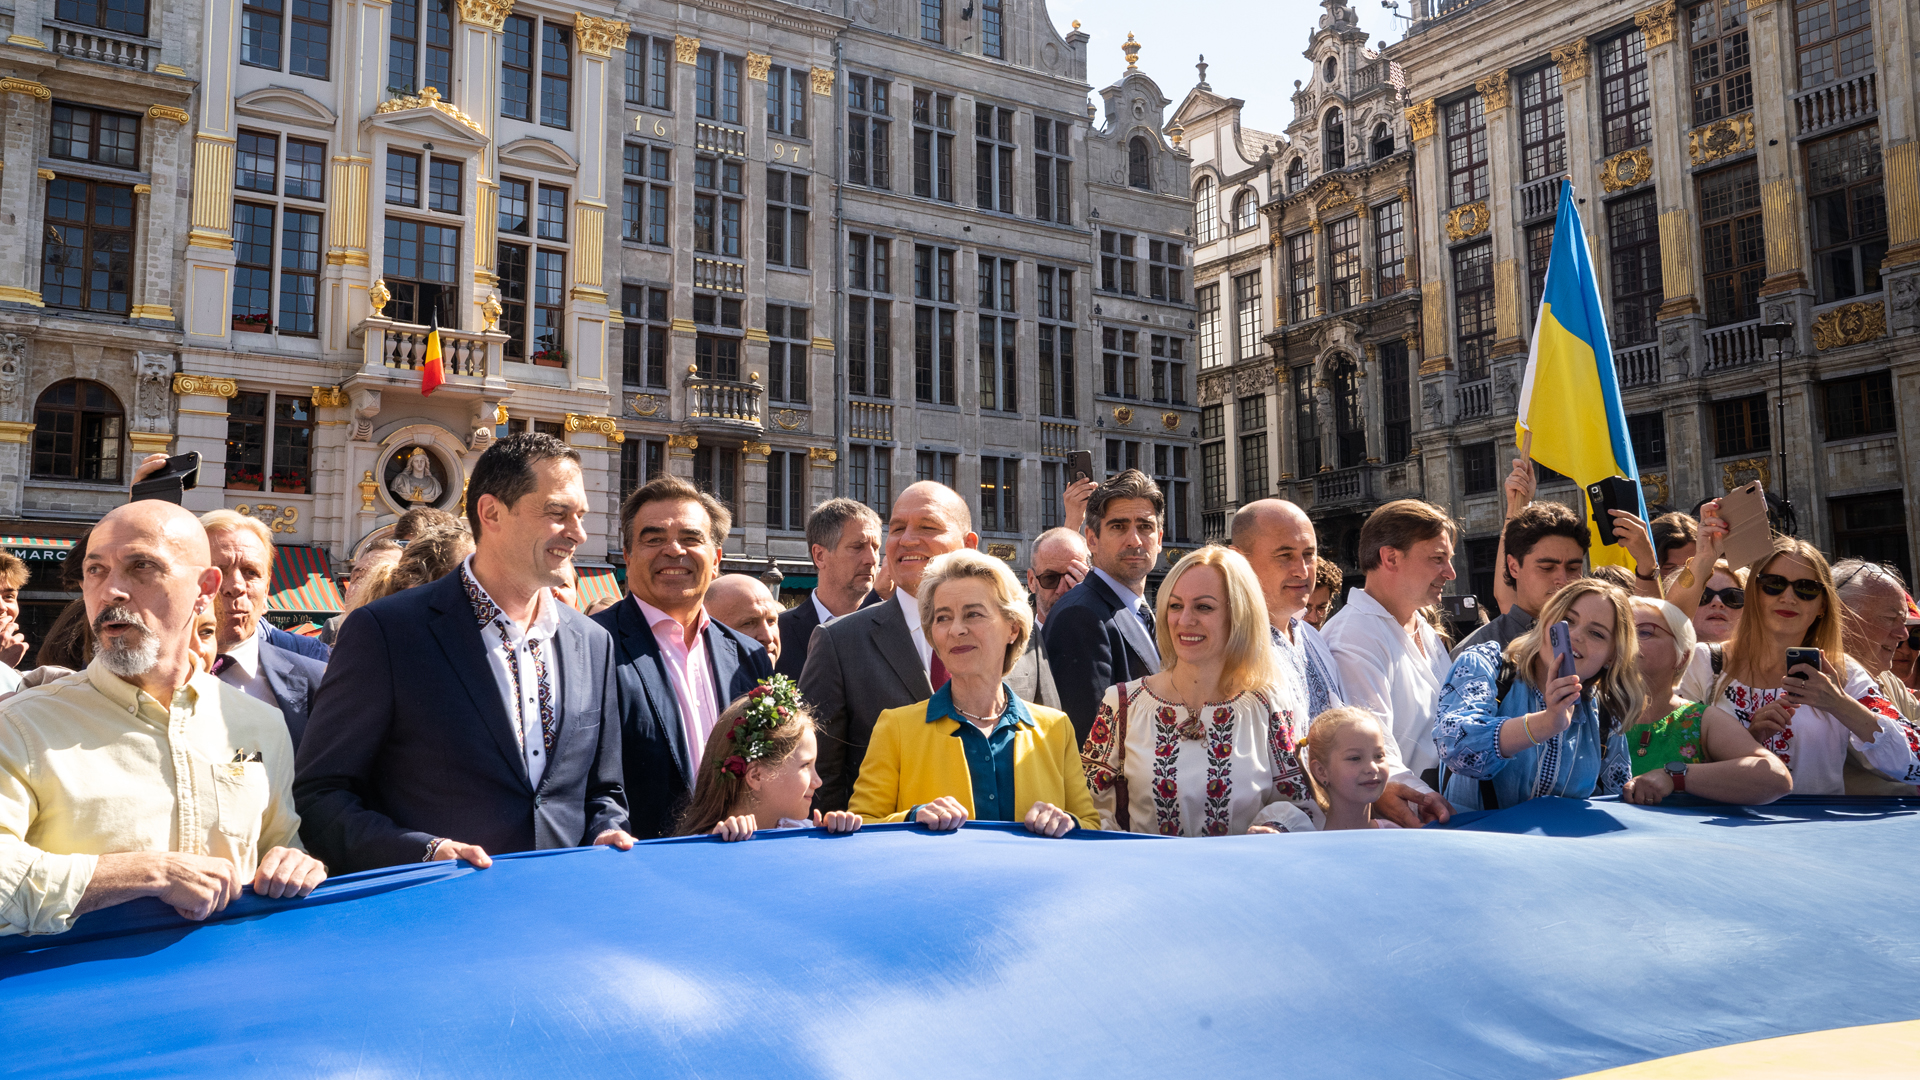 Brüssels Bürgermeister Philippe Close (2. von links) und EU-Kommissionspräsidentin Ursula von der Leyen halten bei einer Veranstaltung auf dem Grand Place - Grote Markt in Brüssel eine ukrainische Fahne. | picture alliance/dpa/BELGA